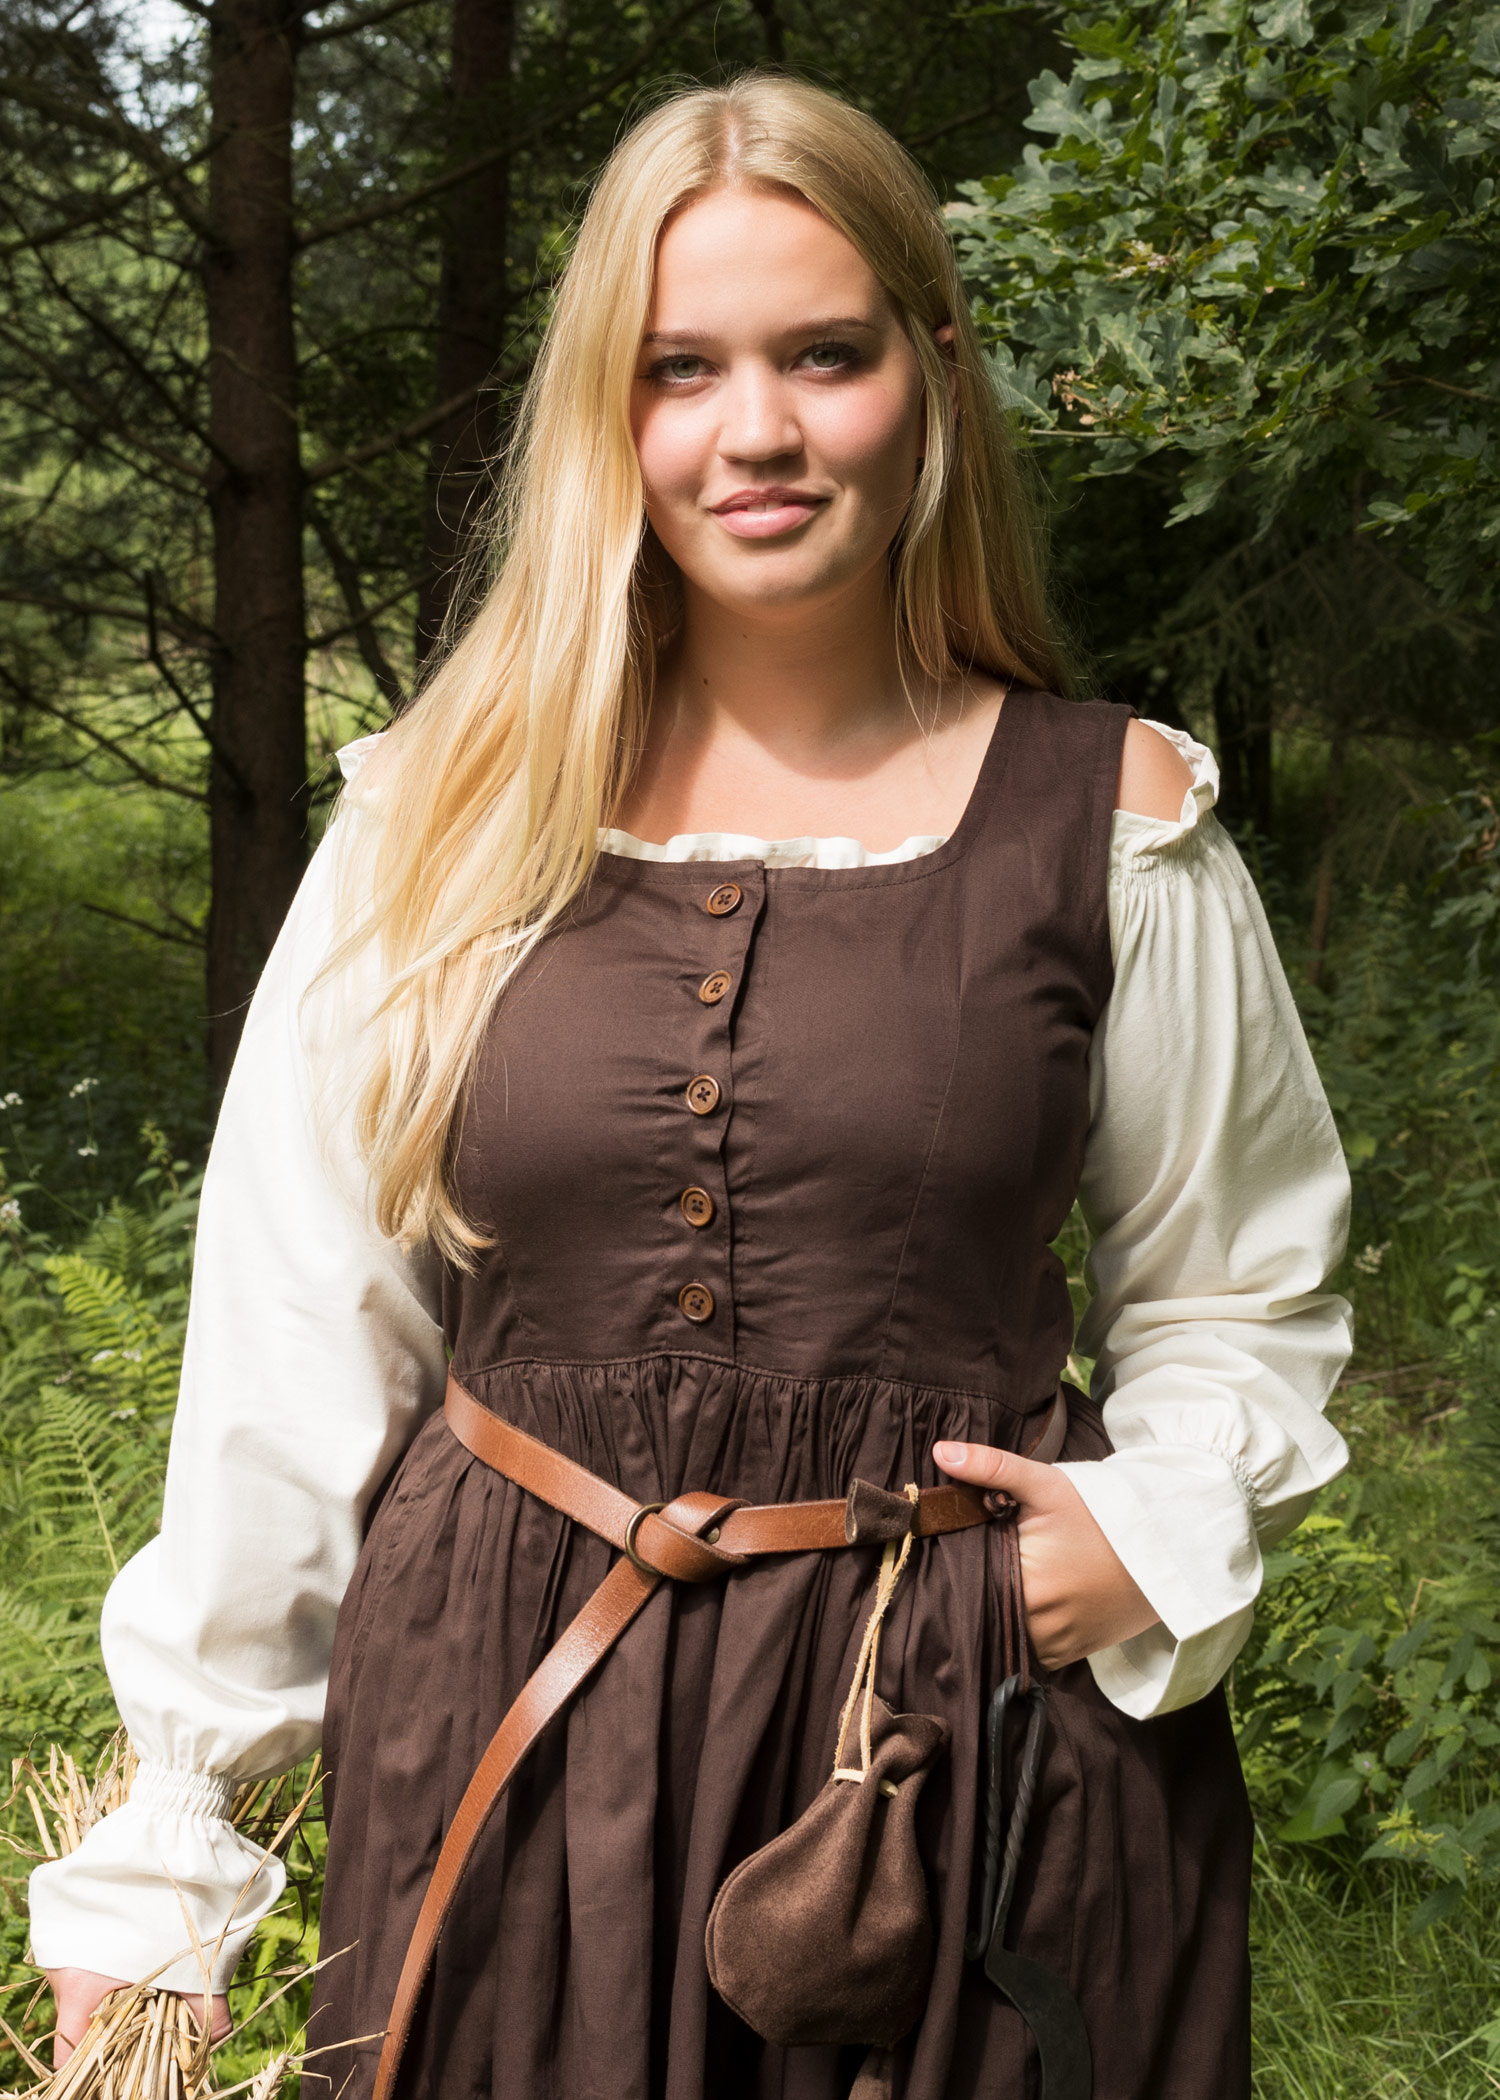 Sleeveless Medieval Dress, Overdress Lene, brown, Peasant's Dress ...